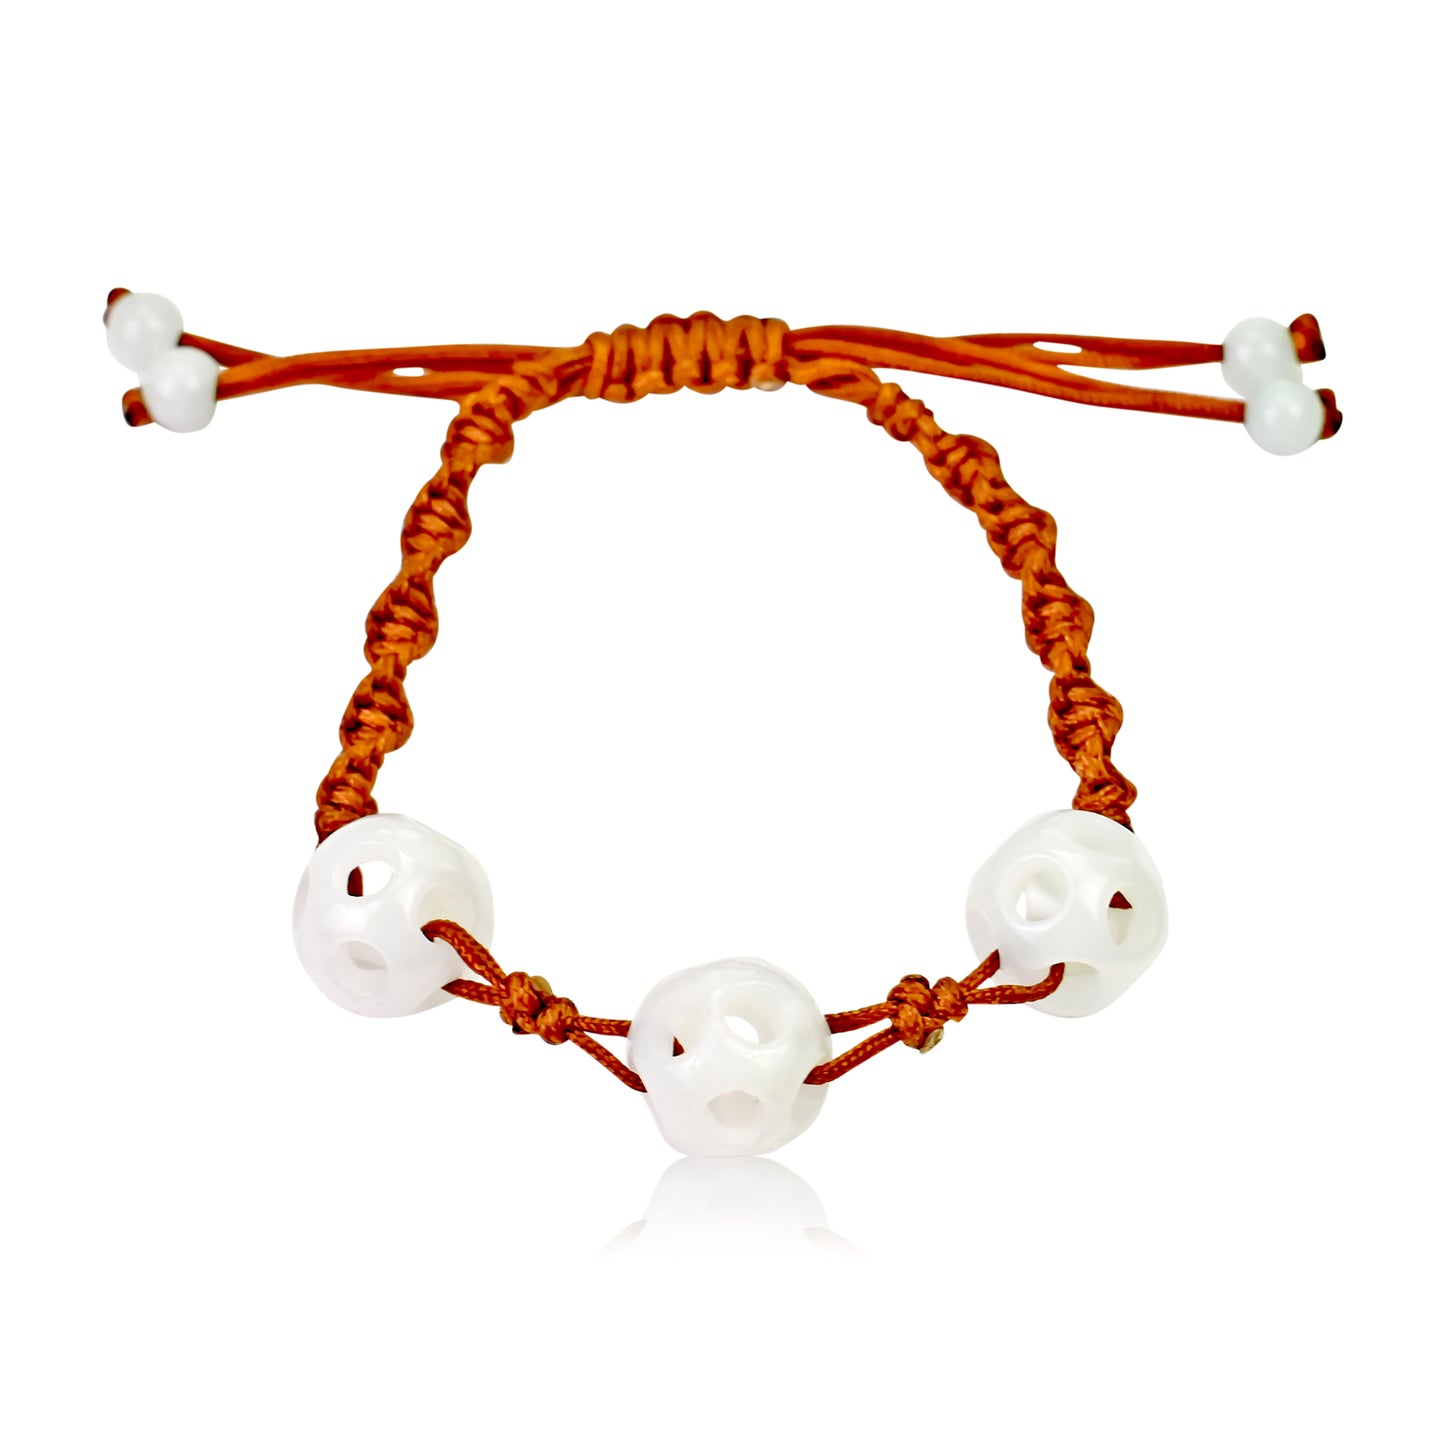 Get the Look: Triple Spherical Perforated Beads Handmade Jade Bracelet